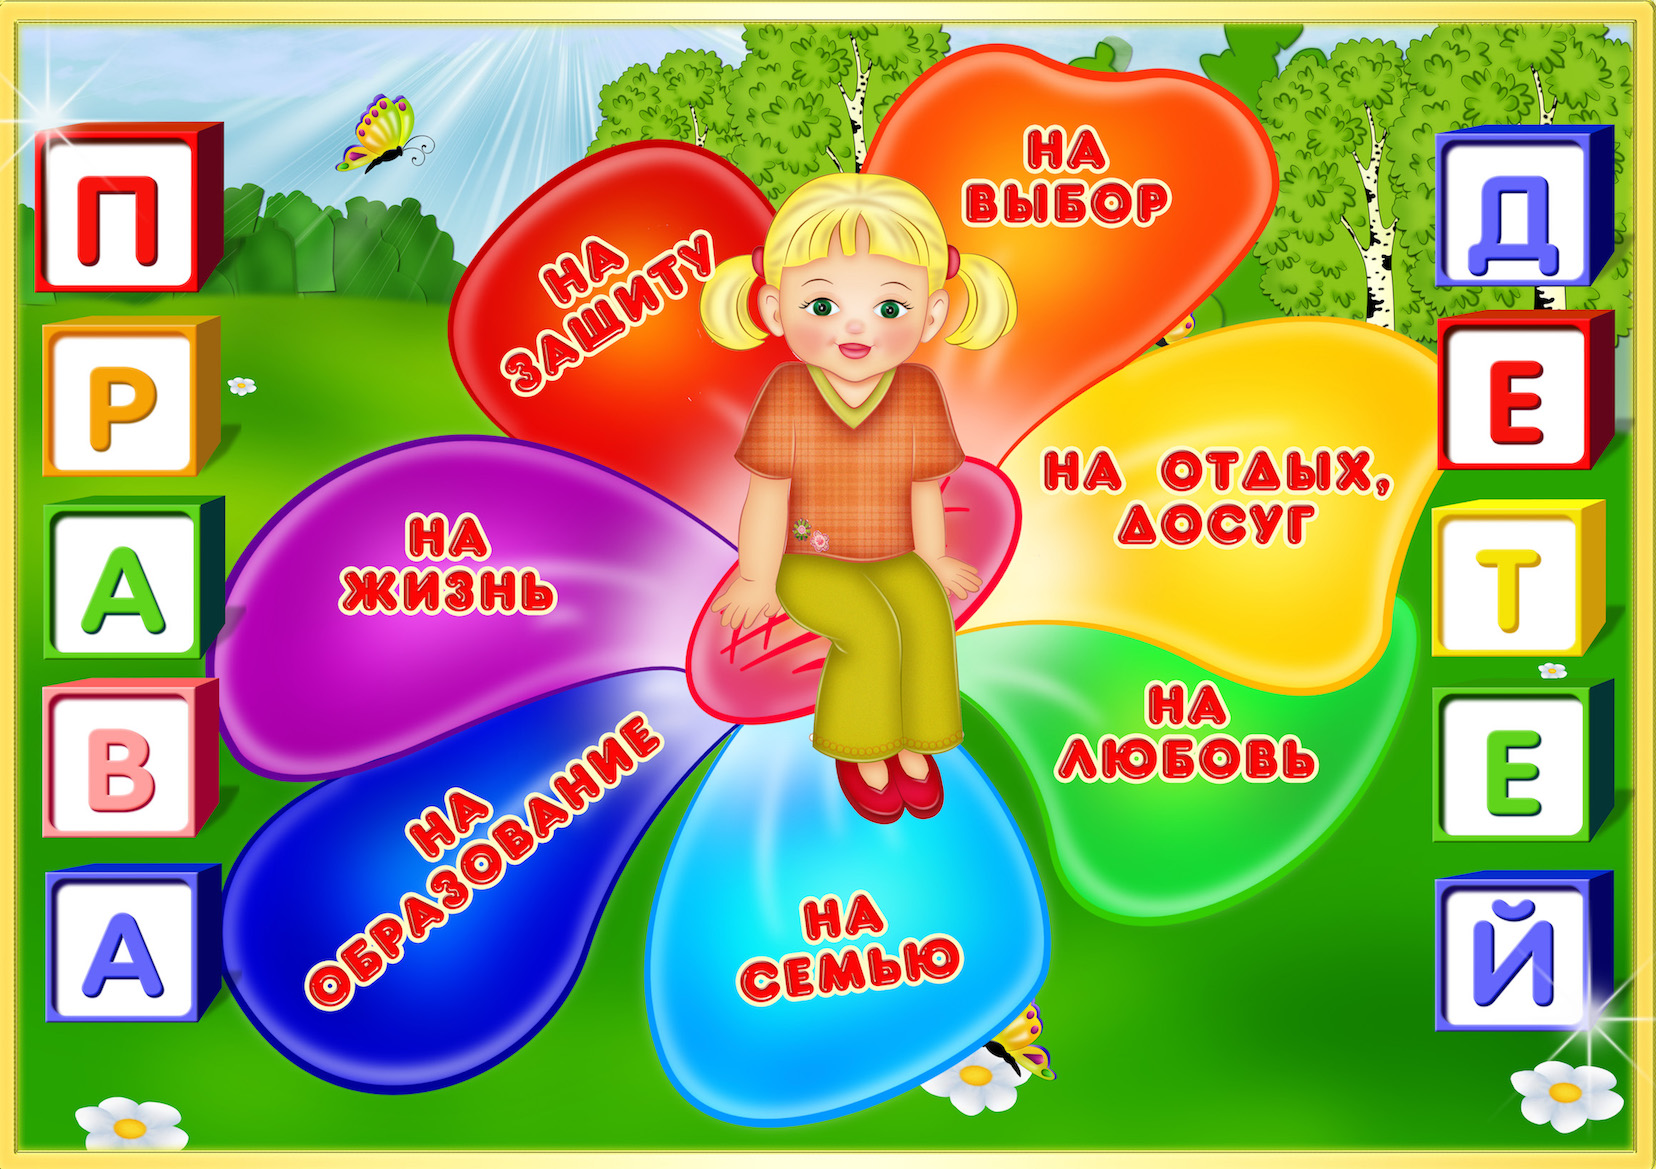 Международный день защиты прав ребенка и Всероссийский День правовой помощи детям